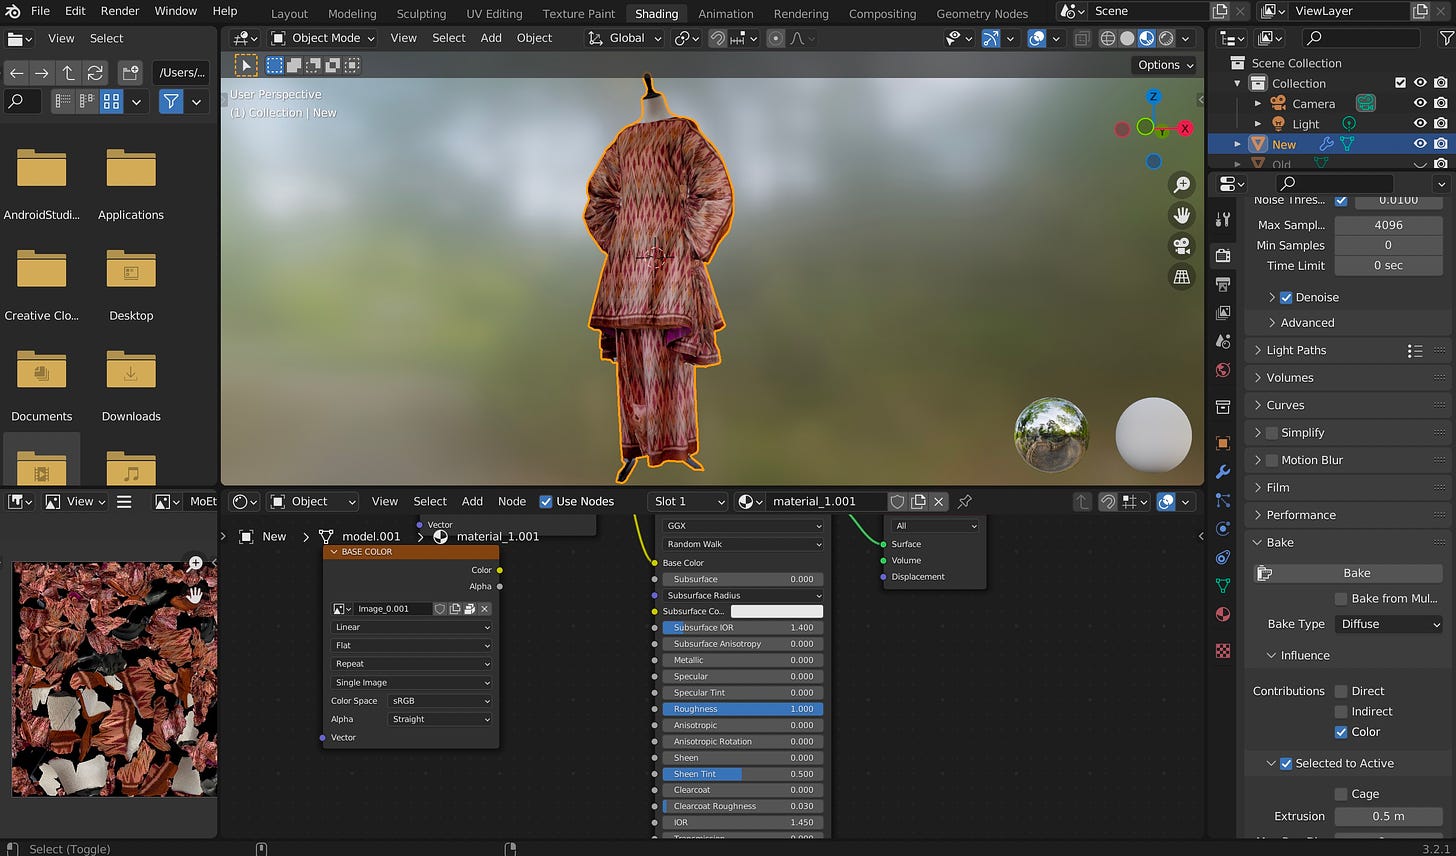 Optimizing the Modern Ethnic 3D model in Blender.